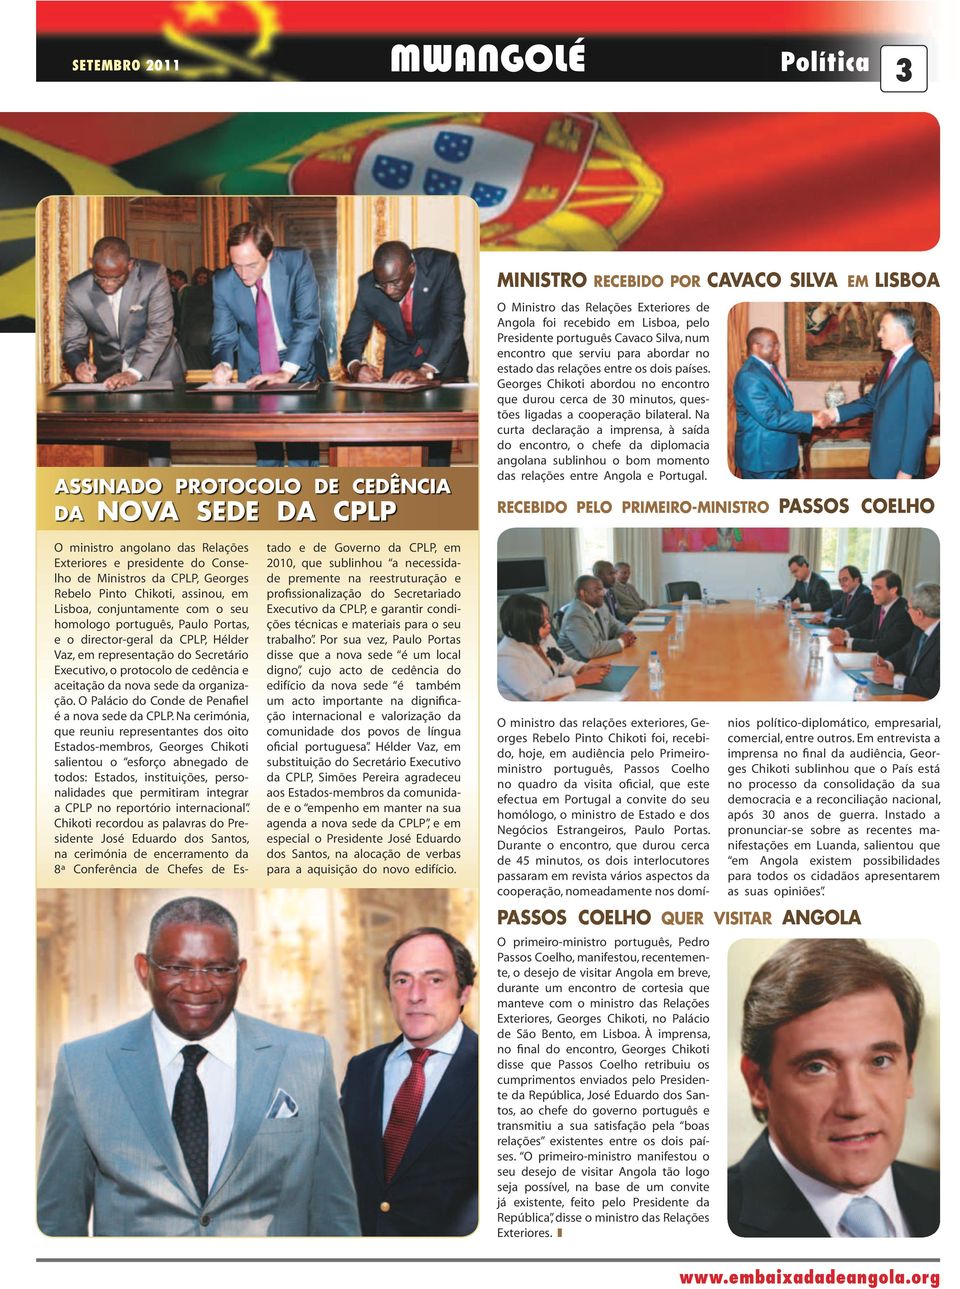 Na curta declaração a imprensa, à saída do encontro, o chefe da diplomacia angolana sublinhou o bom momento das relações entre Angola e Portugal.